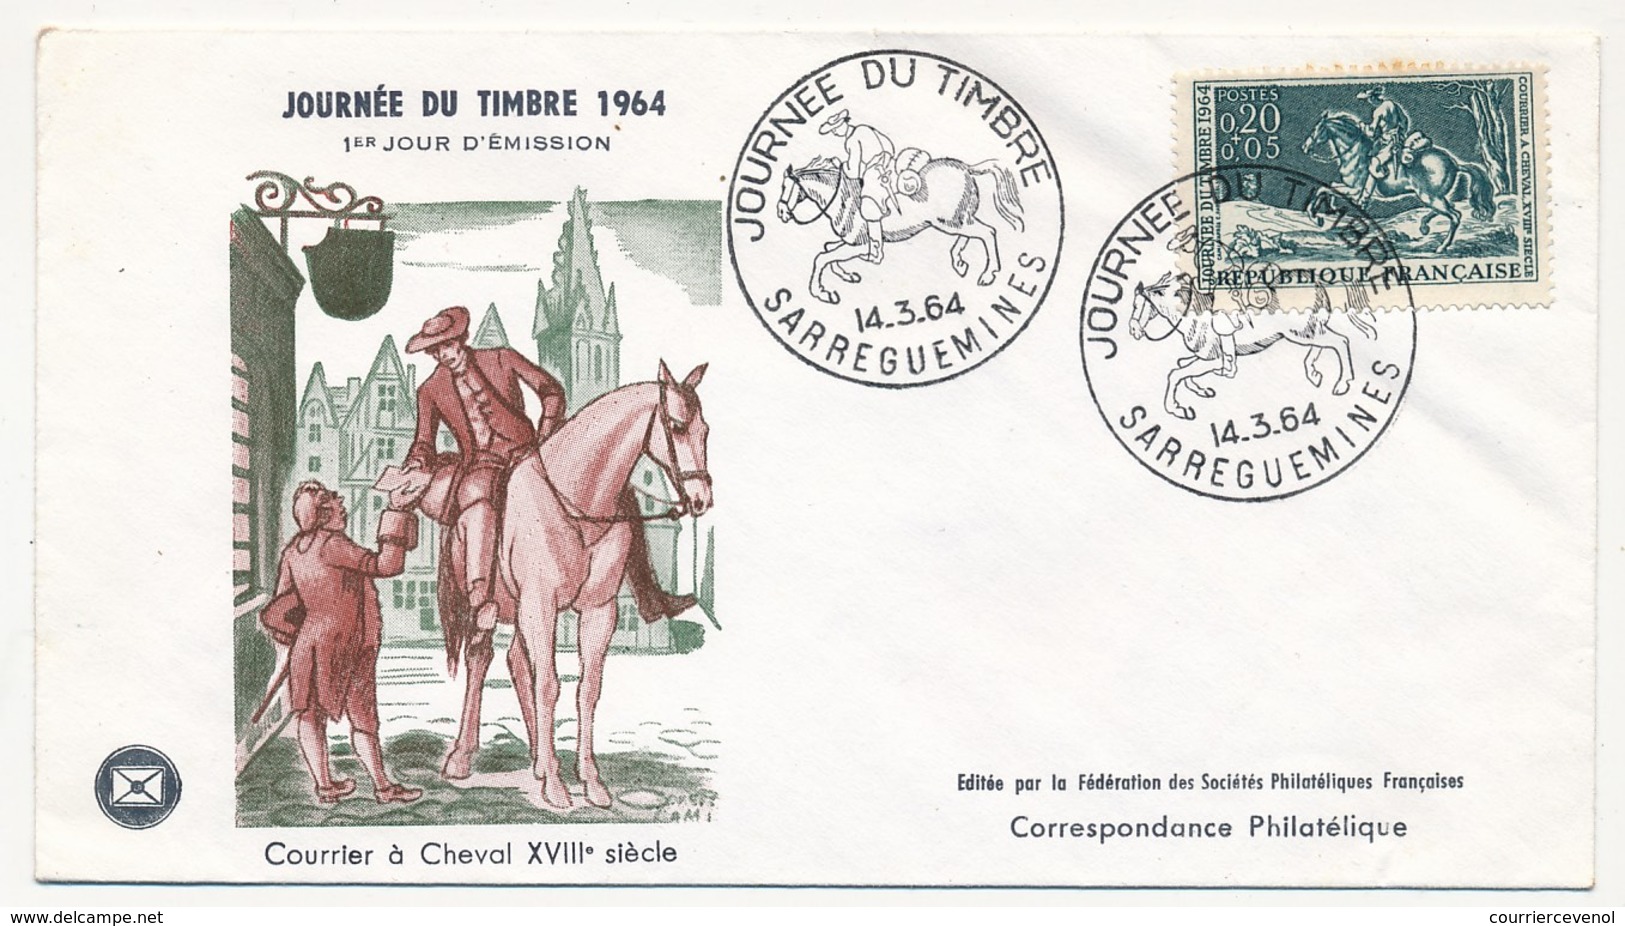 FRANCE - Enveloppe FDC - Journée Du Timbre 1964 (Courrier à Cheval XVIIIeme Siècle) - SARREGUEMINES 14.3.1964 - Giornata Del Francobollo